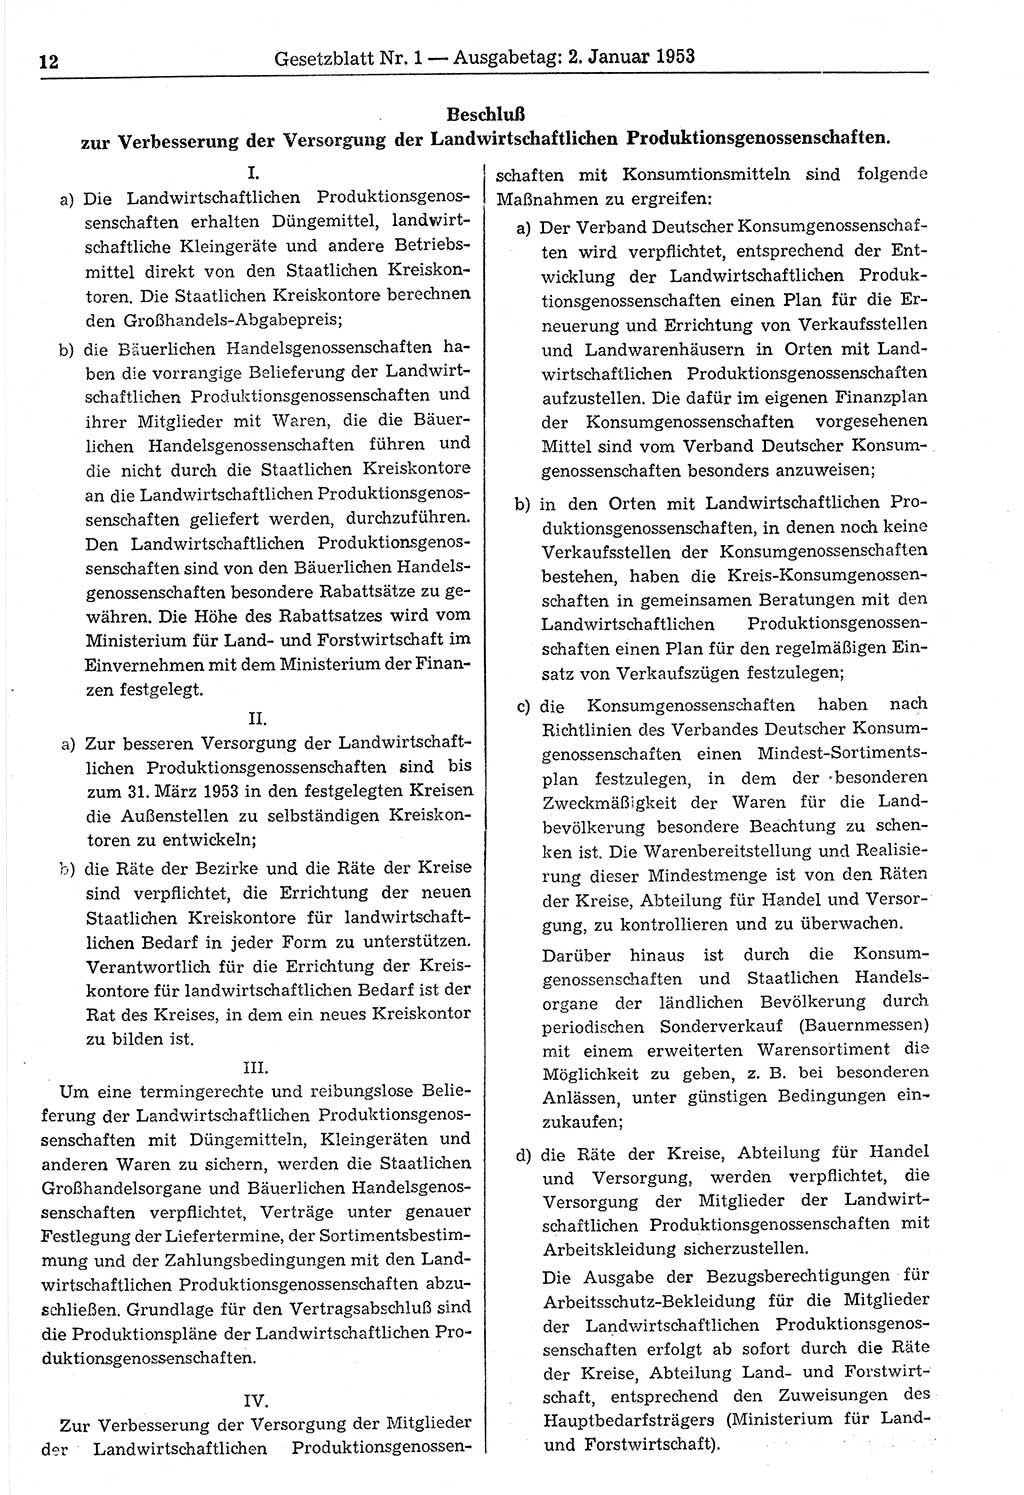 Gesetzblatt (GBl.) der Deutschen Demokratischen Republik (DDR) 1953, Seite 12 (GBl. DDR 1953, S. 12)